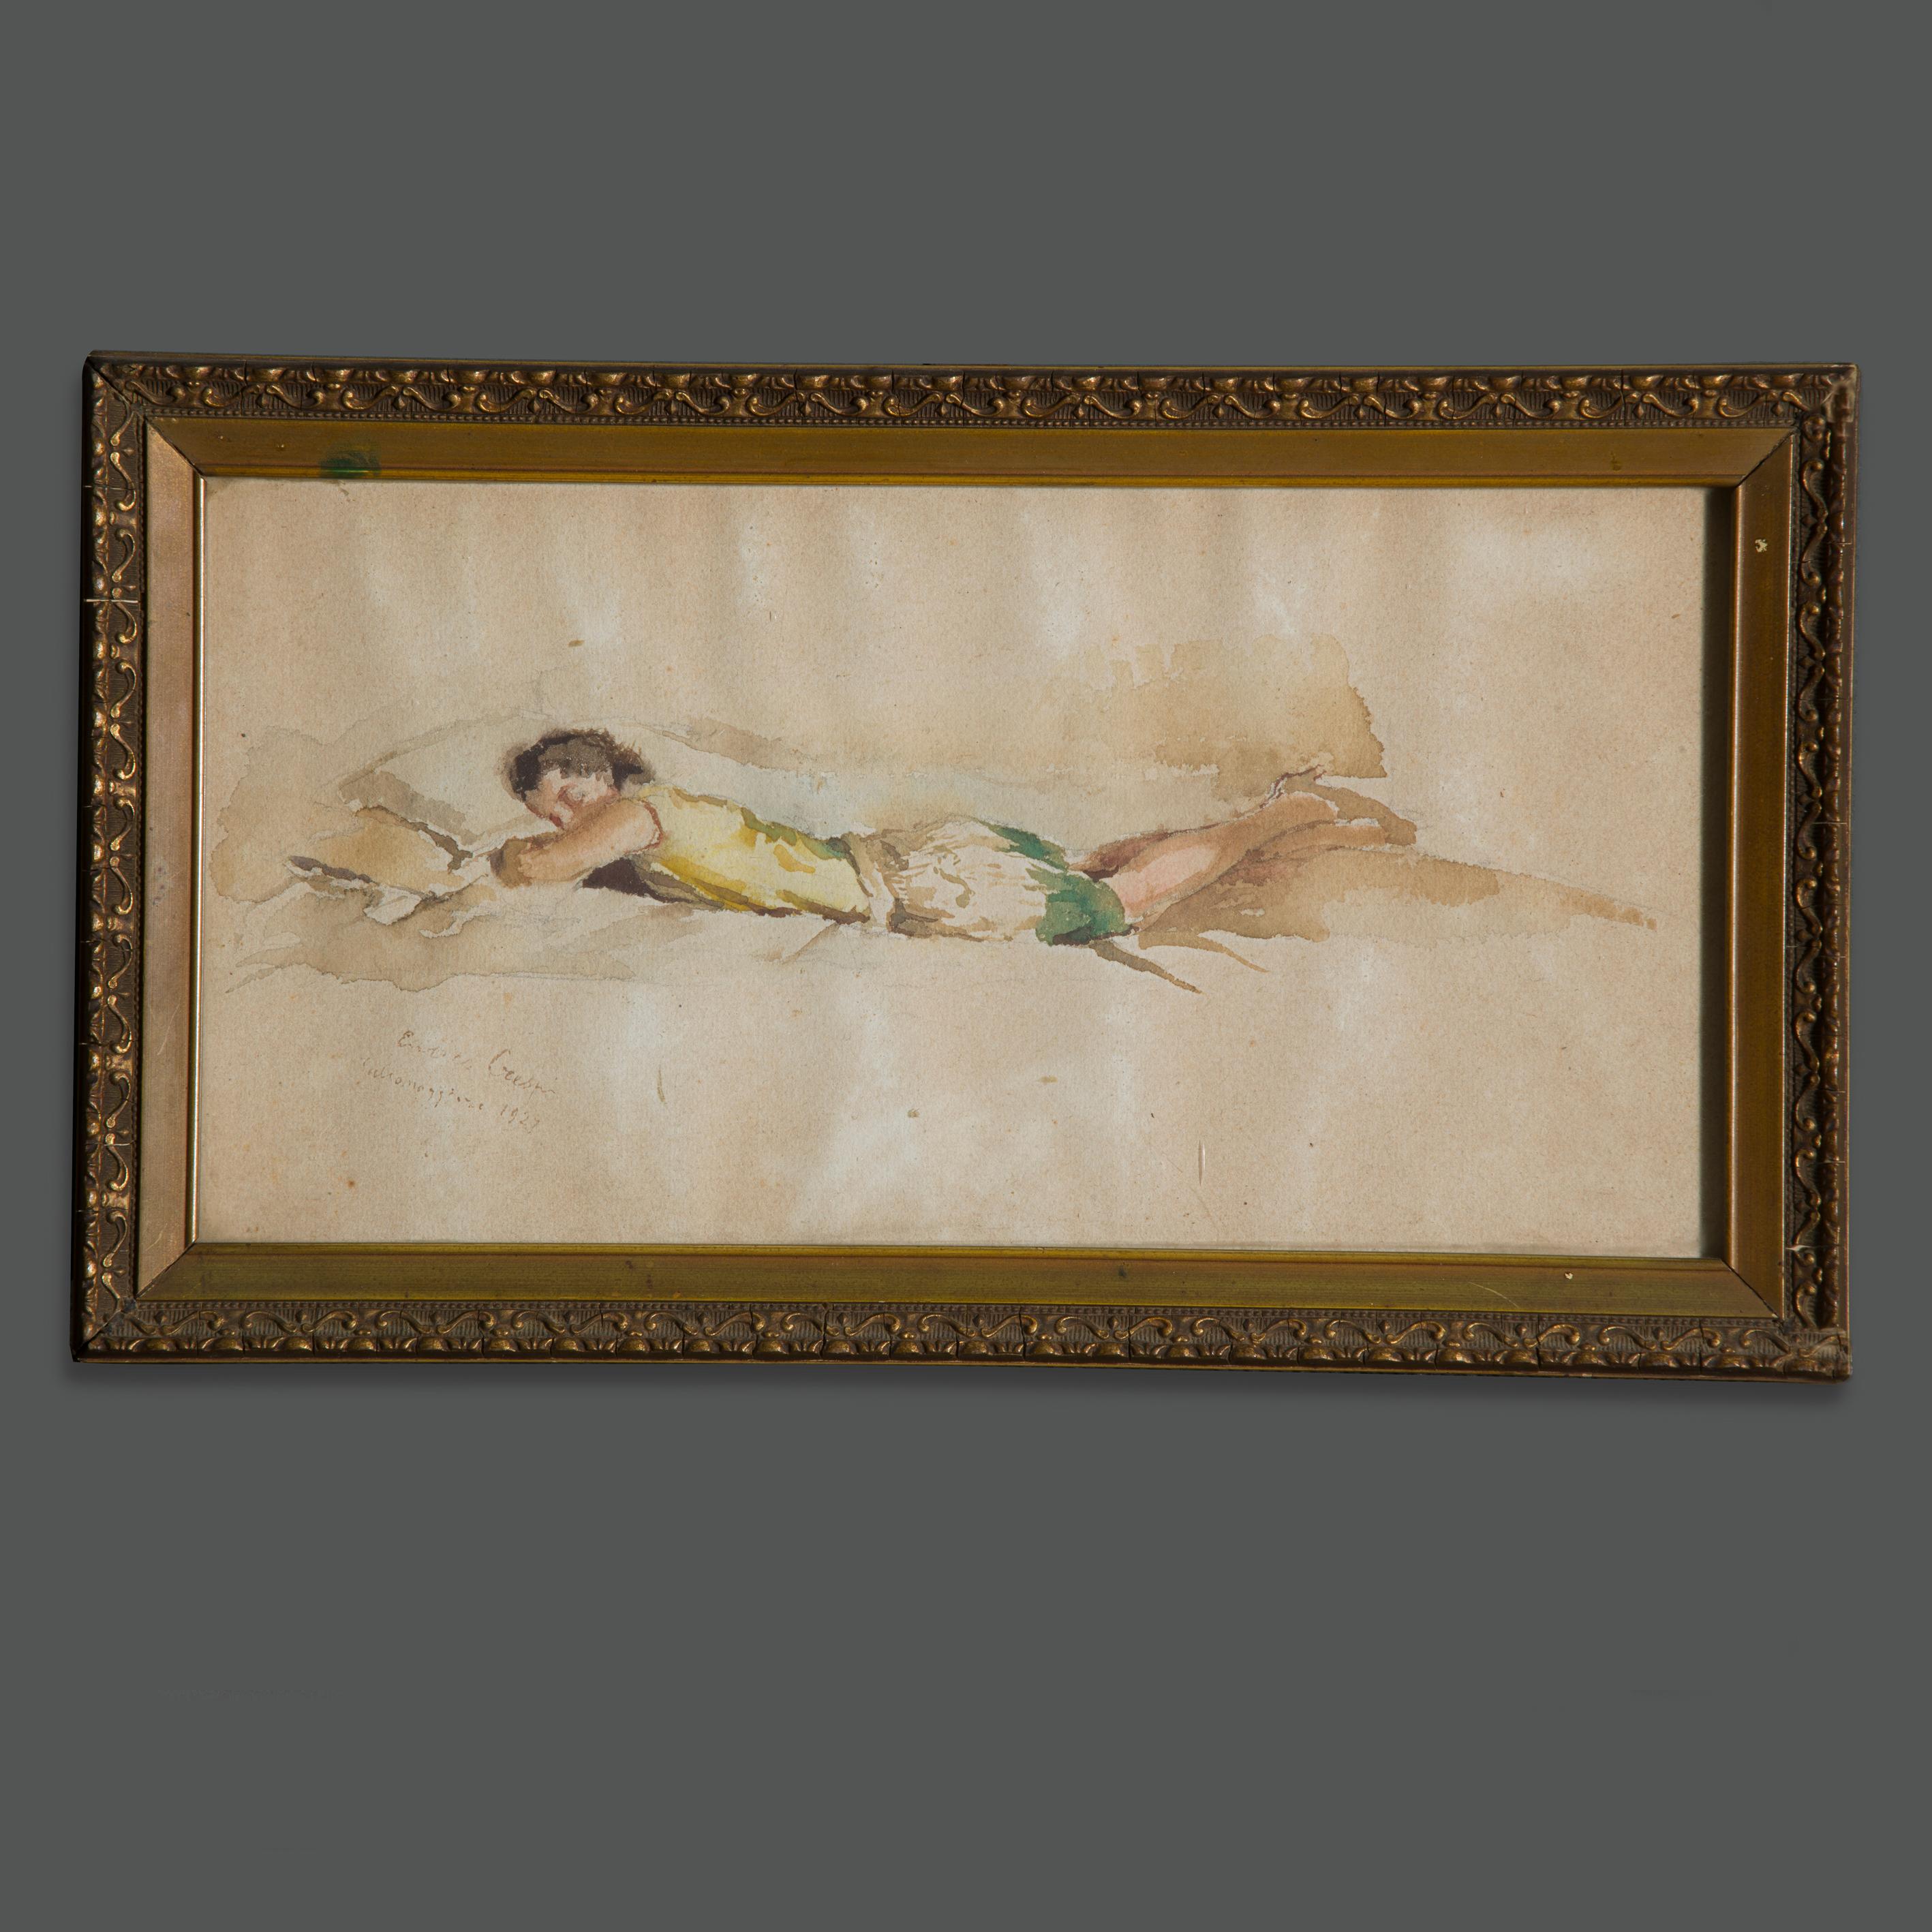 Belle et évocatrice peinture à la technique de l'aquarelle du grand artiste de l'école milanaise Enrico Crespi.
Elle représente une jeune femme allongée sur son lit, rêveuse.
Il s'agit vraisemblablement d'un jeune descendant de la haute société